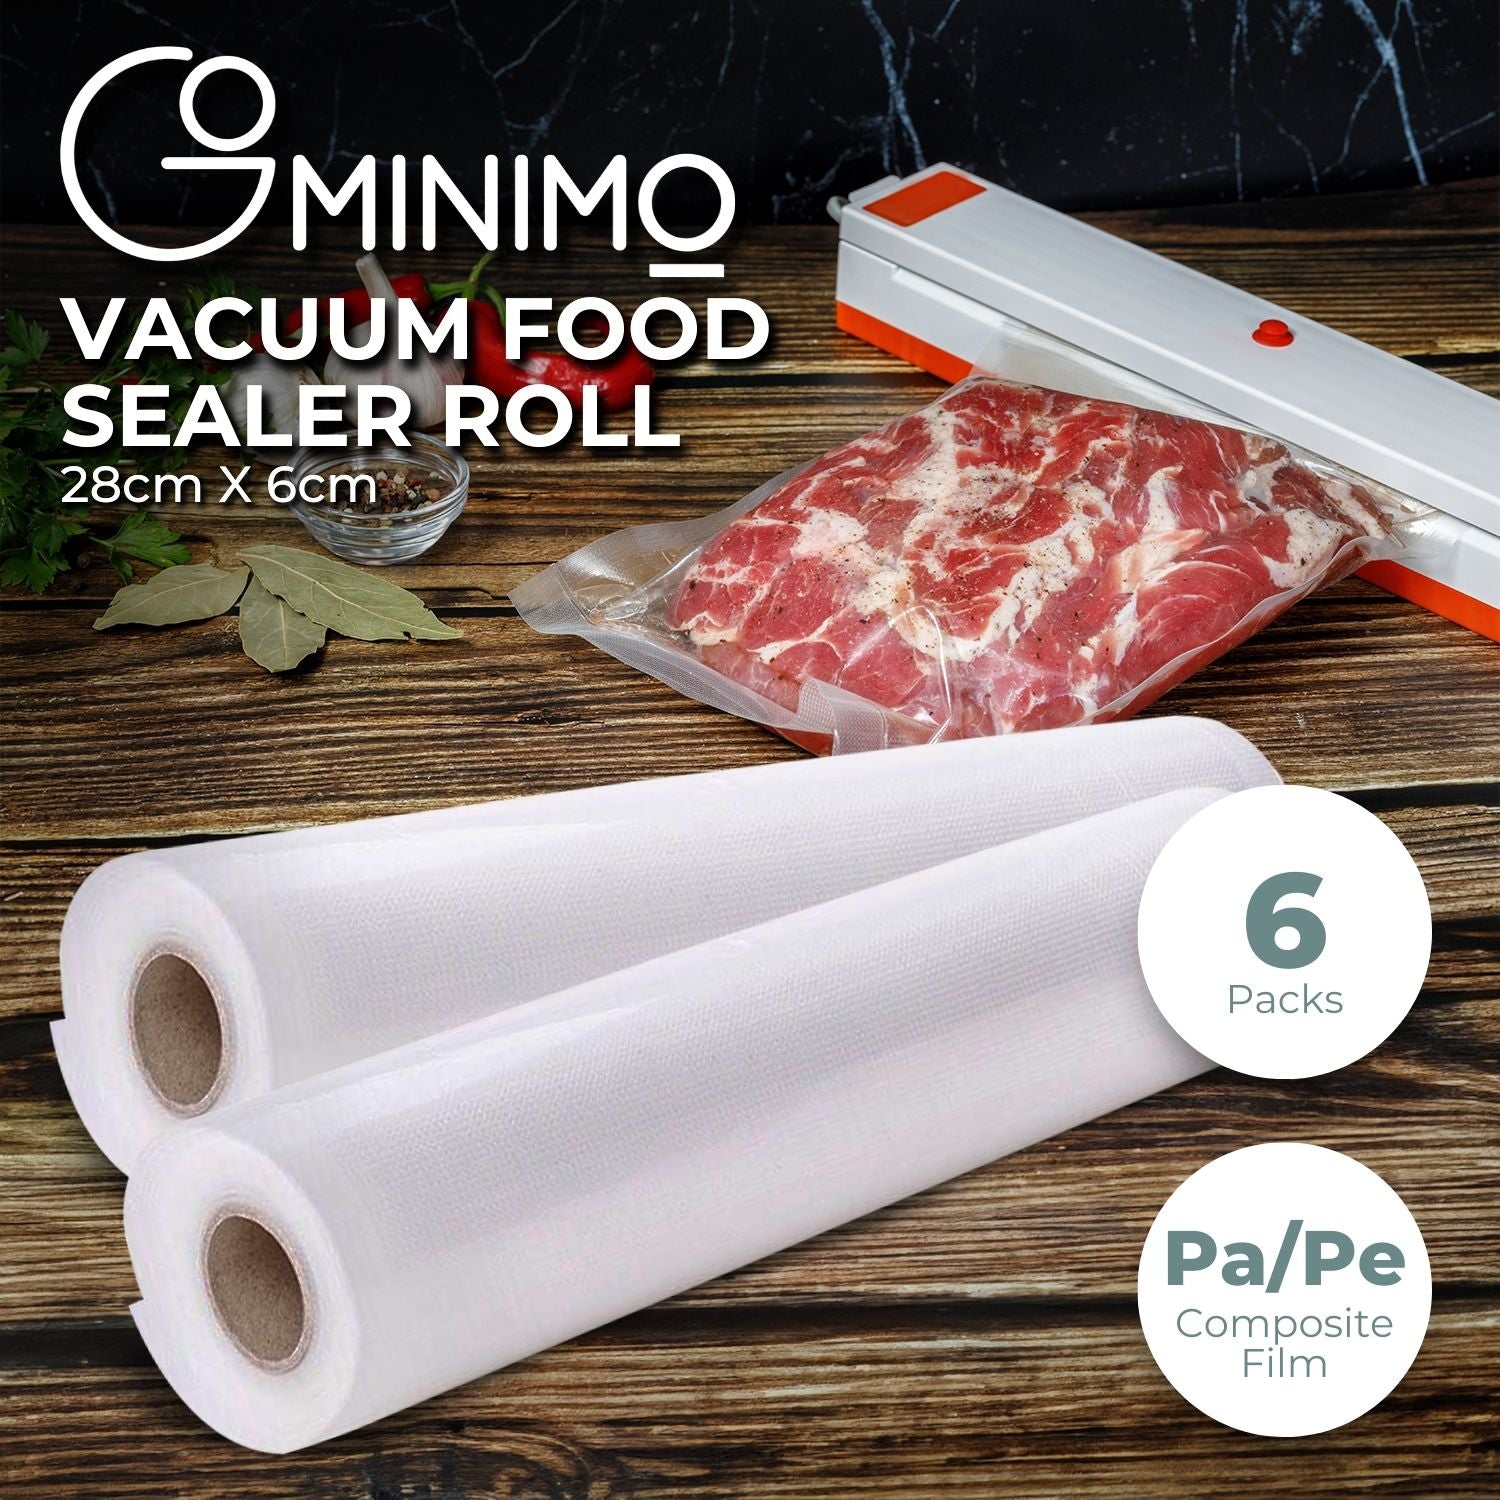 GOMINIMO 6 Pack Vacuum Food Sealer Rolls (28cm x 6m) - 0